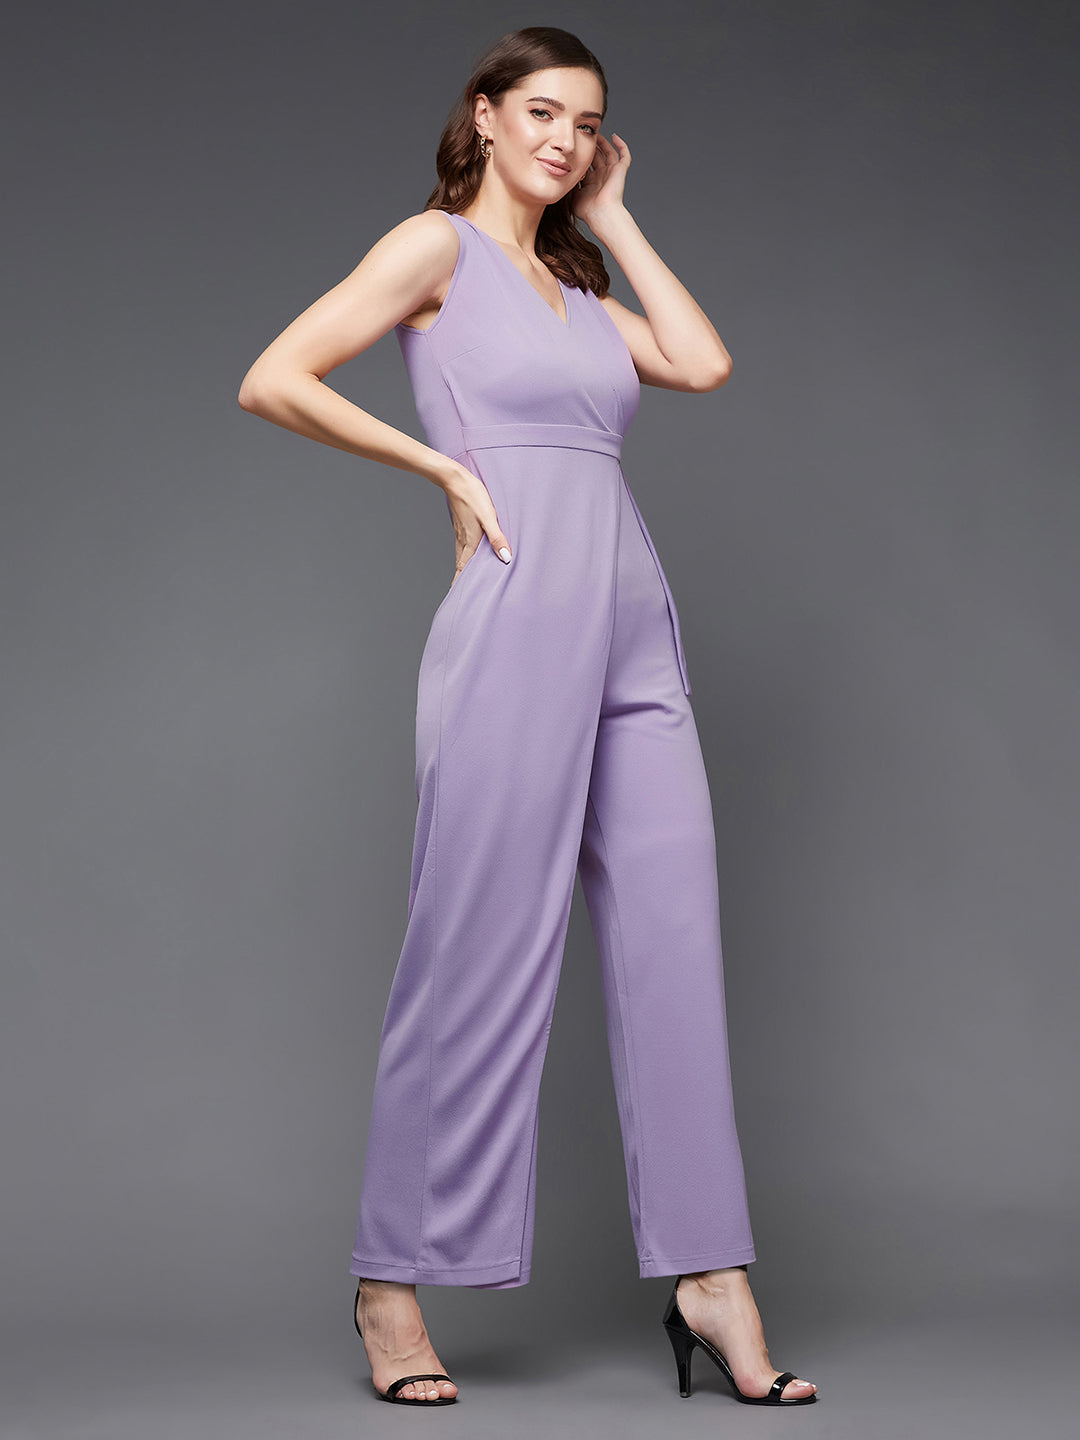 Women's Light Lavender V-Neck Sleeveless Solid Wrap Regular Length Jumpsuit